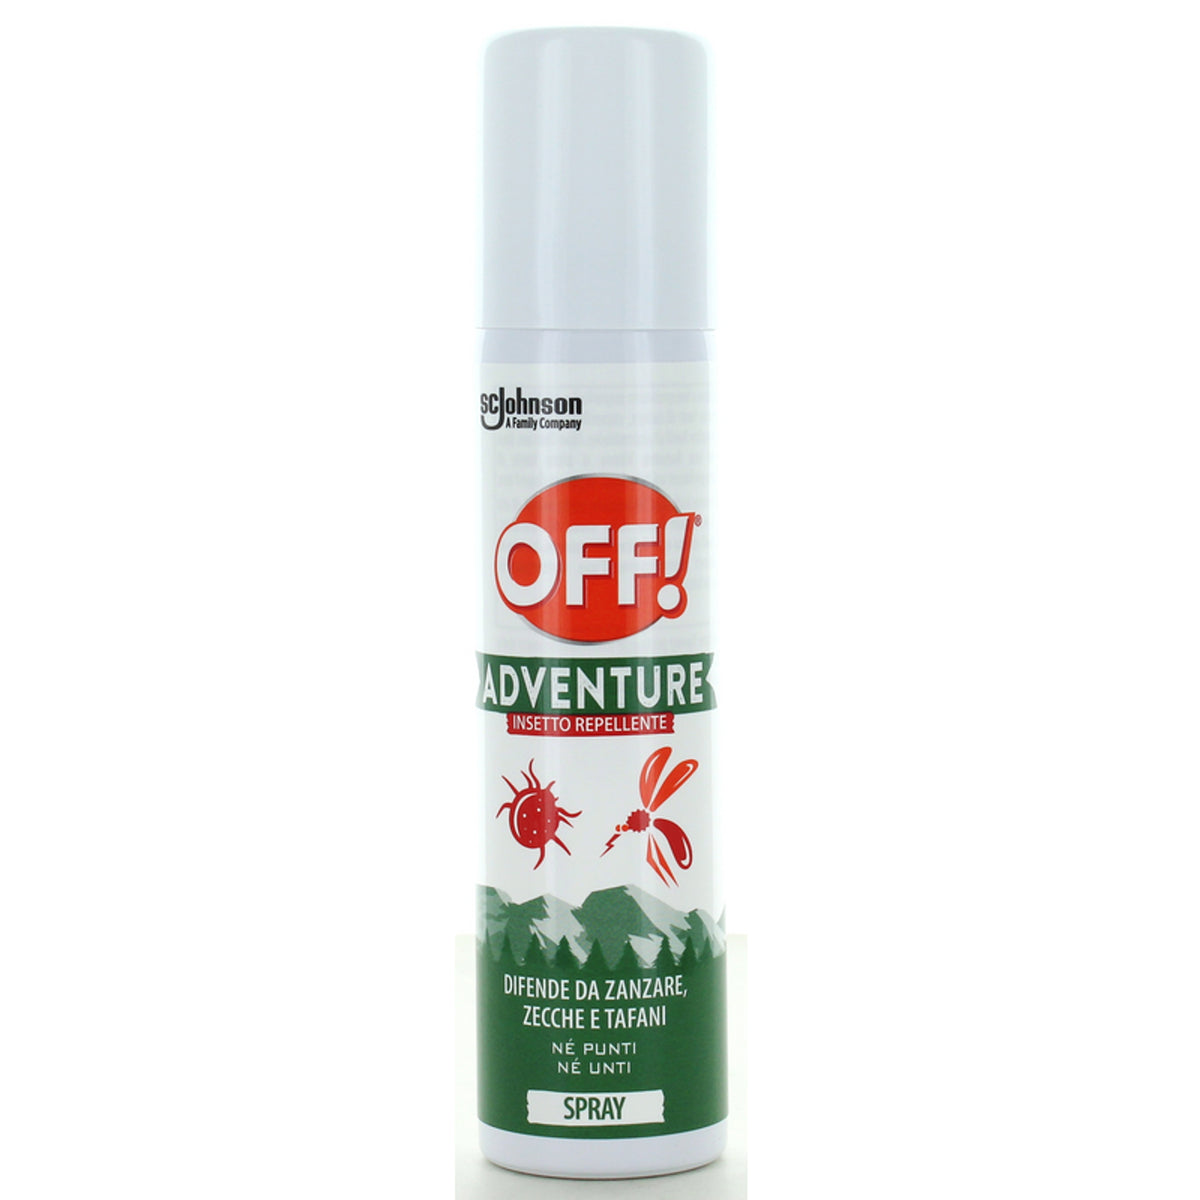 Off! Adventure Insetto Repellente Spray 100 ml